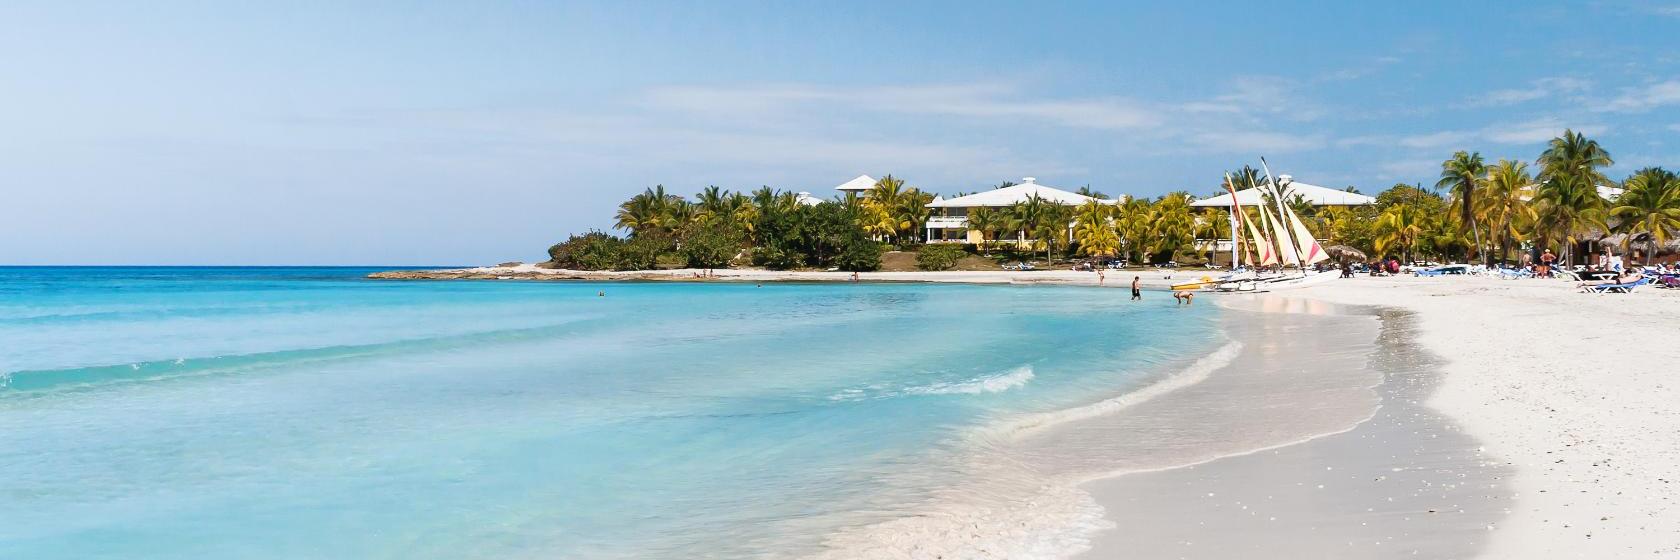 10 parasta hotellia kohteessa Varadero, Kuubassa. (Hinnat alkaen € 30)